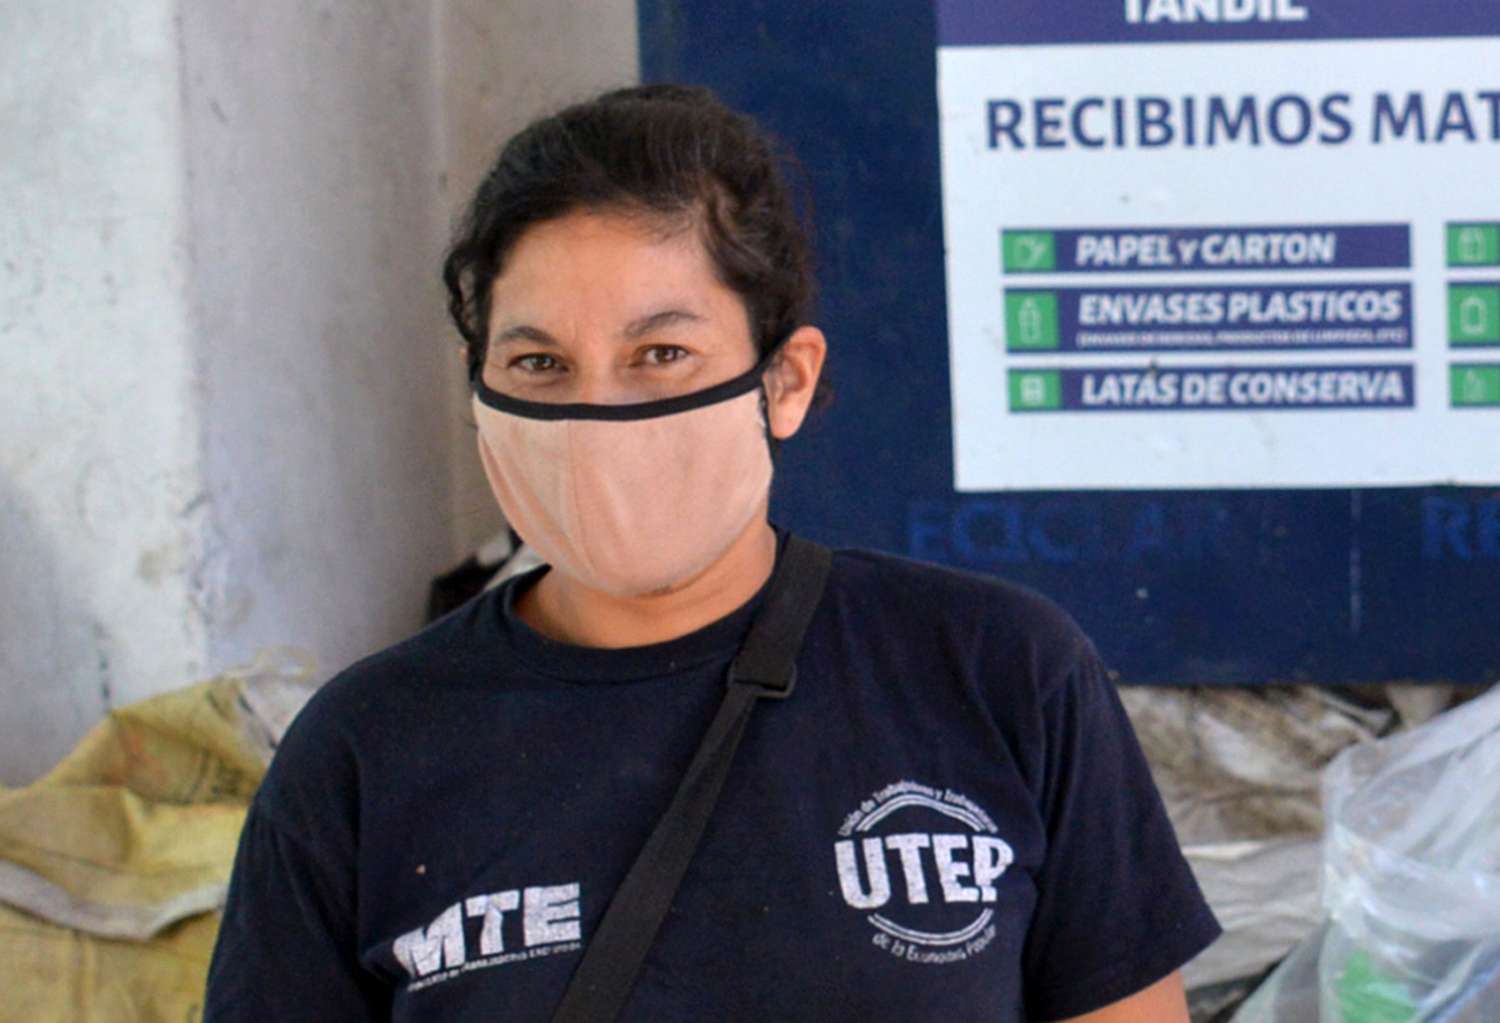 Mariela Rodríguez, del MTE: “Nuestra propuesta es recuperar un terreno municipal abandonado e instalar ahí una planta de reciclado”